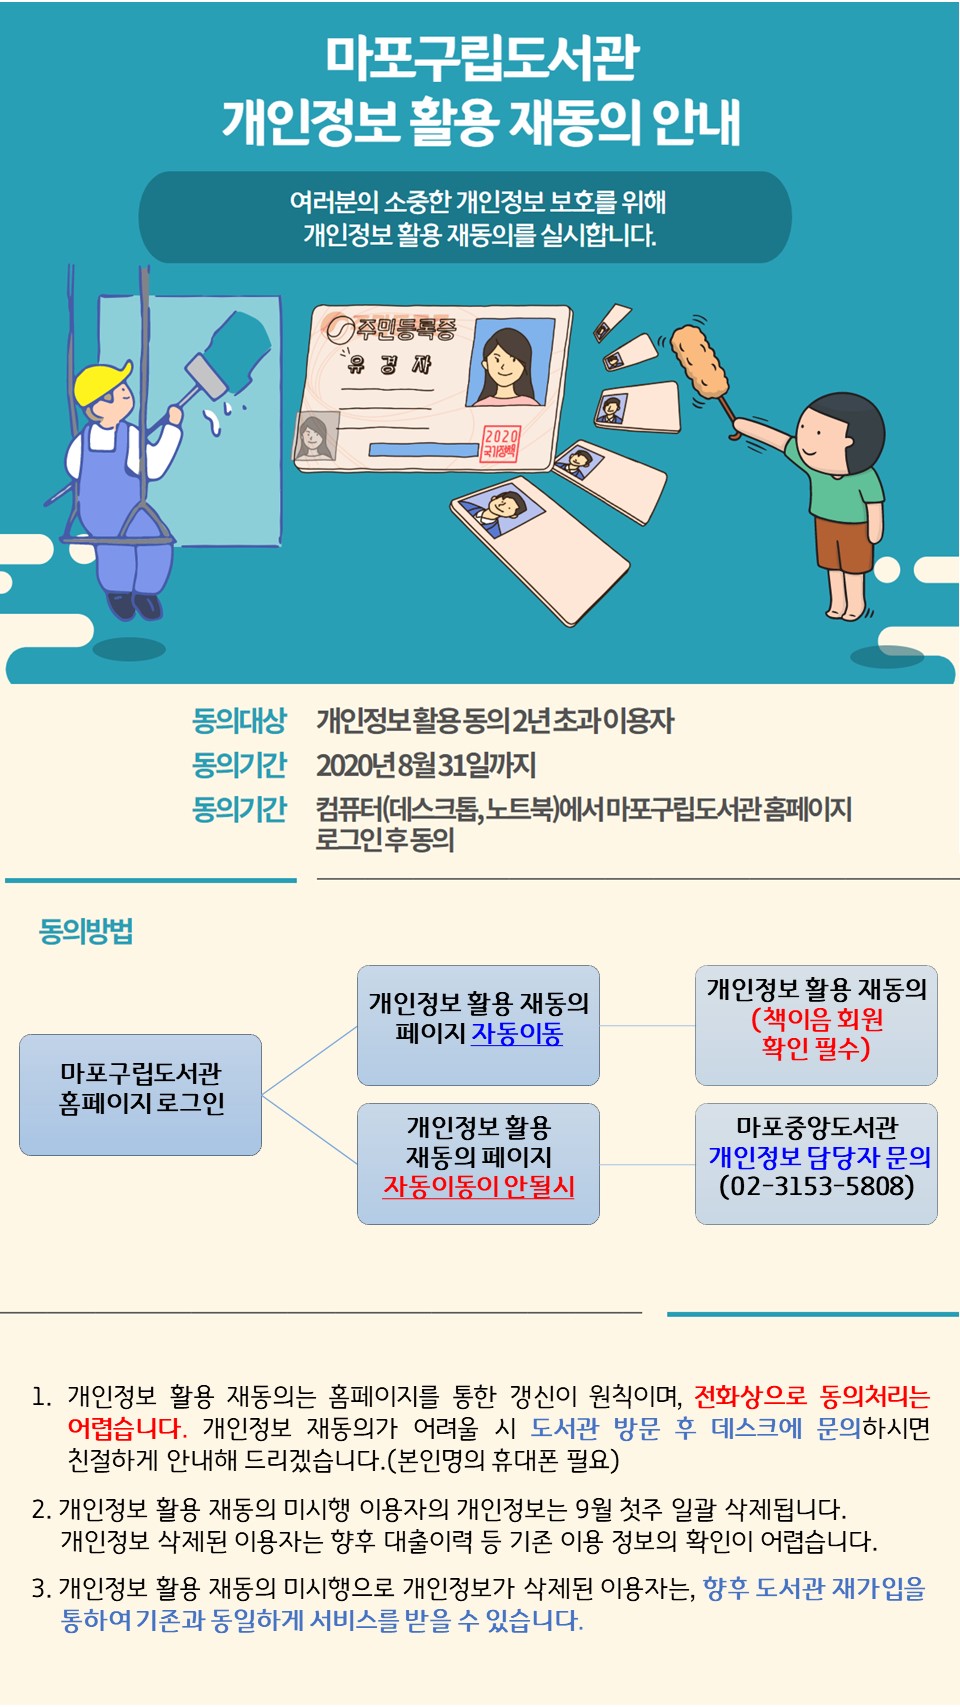 마포구립도서관 개인정보 활용 재동의 안내